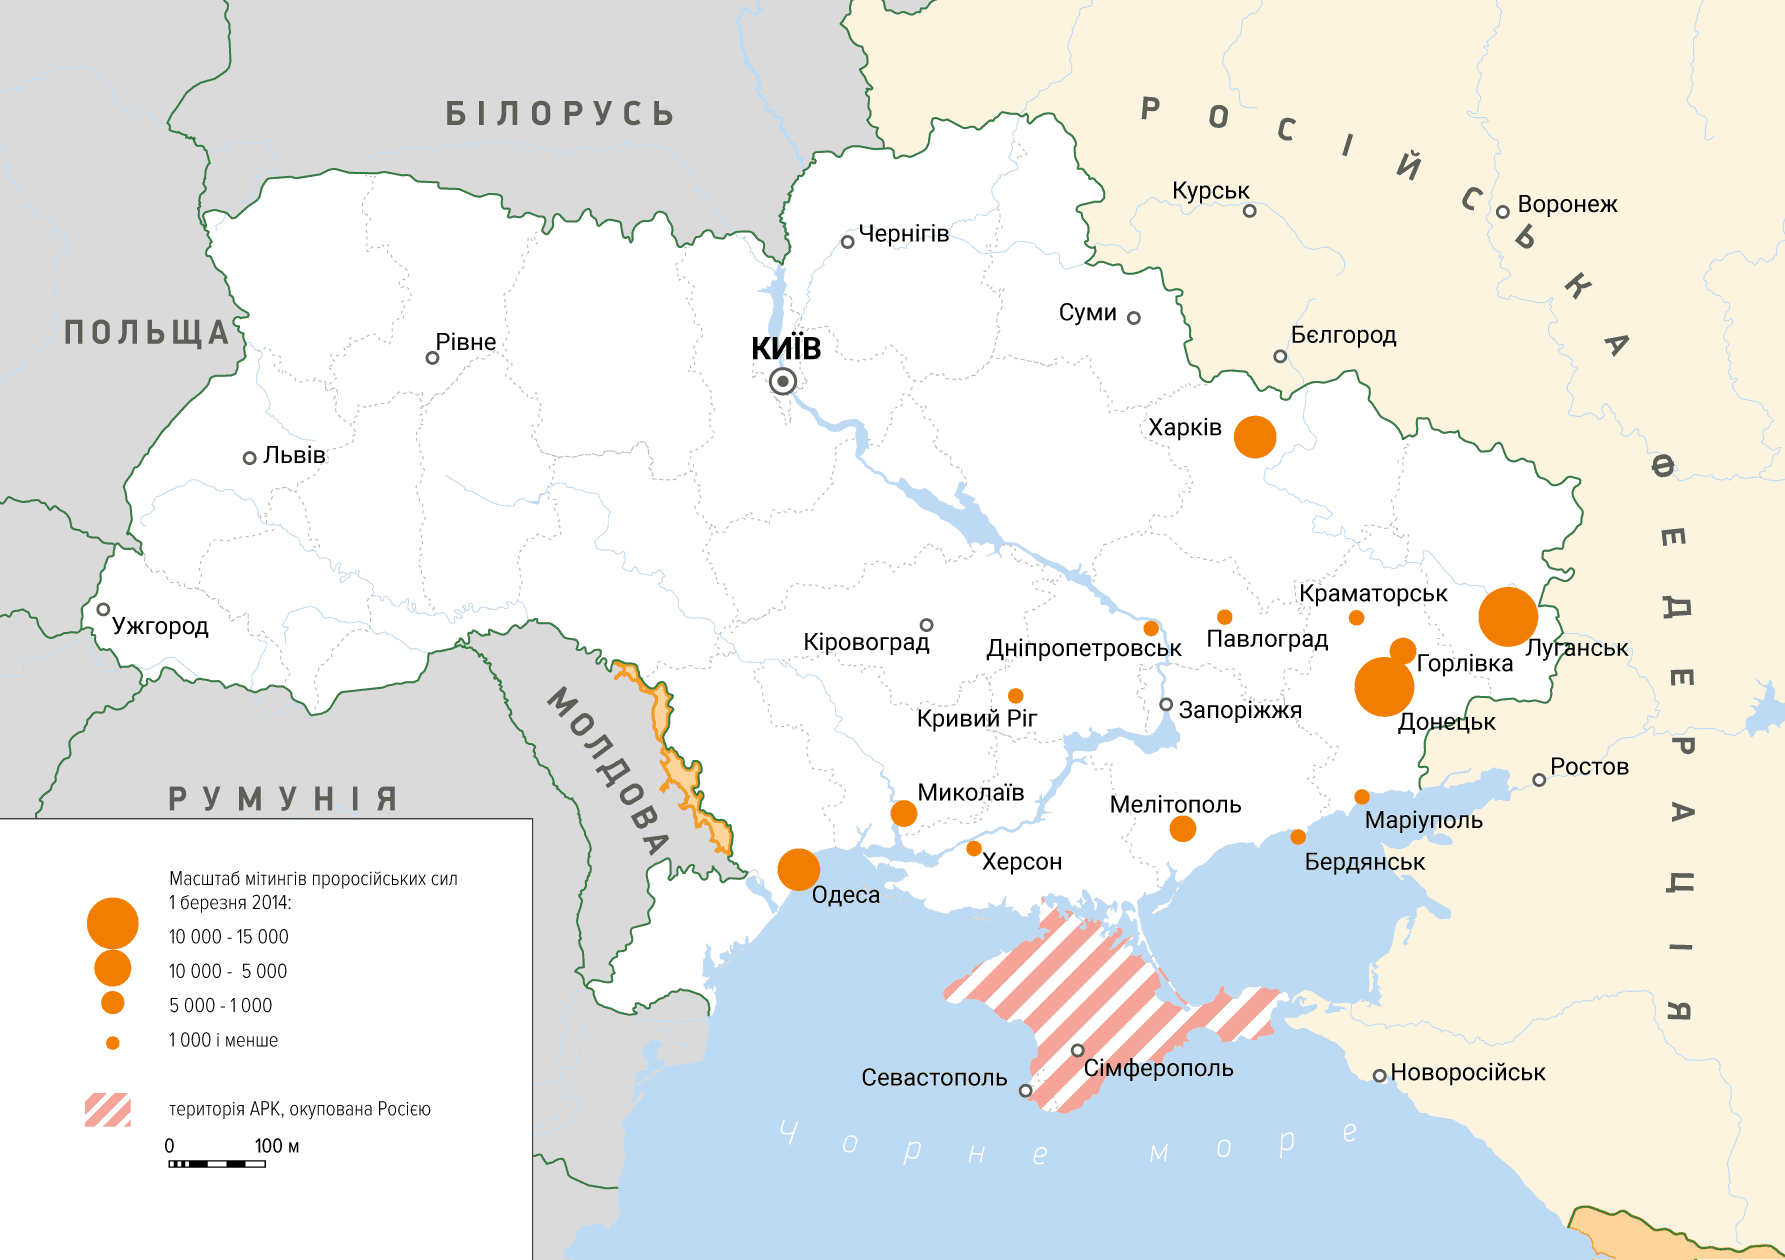 Географія та чисельність проросійських мітингів в Україні 1 березня 2014 року